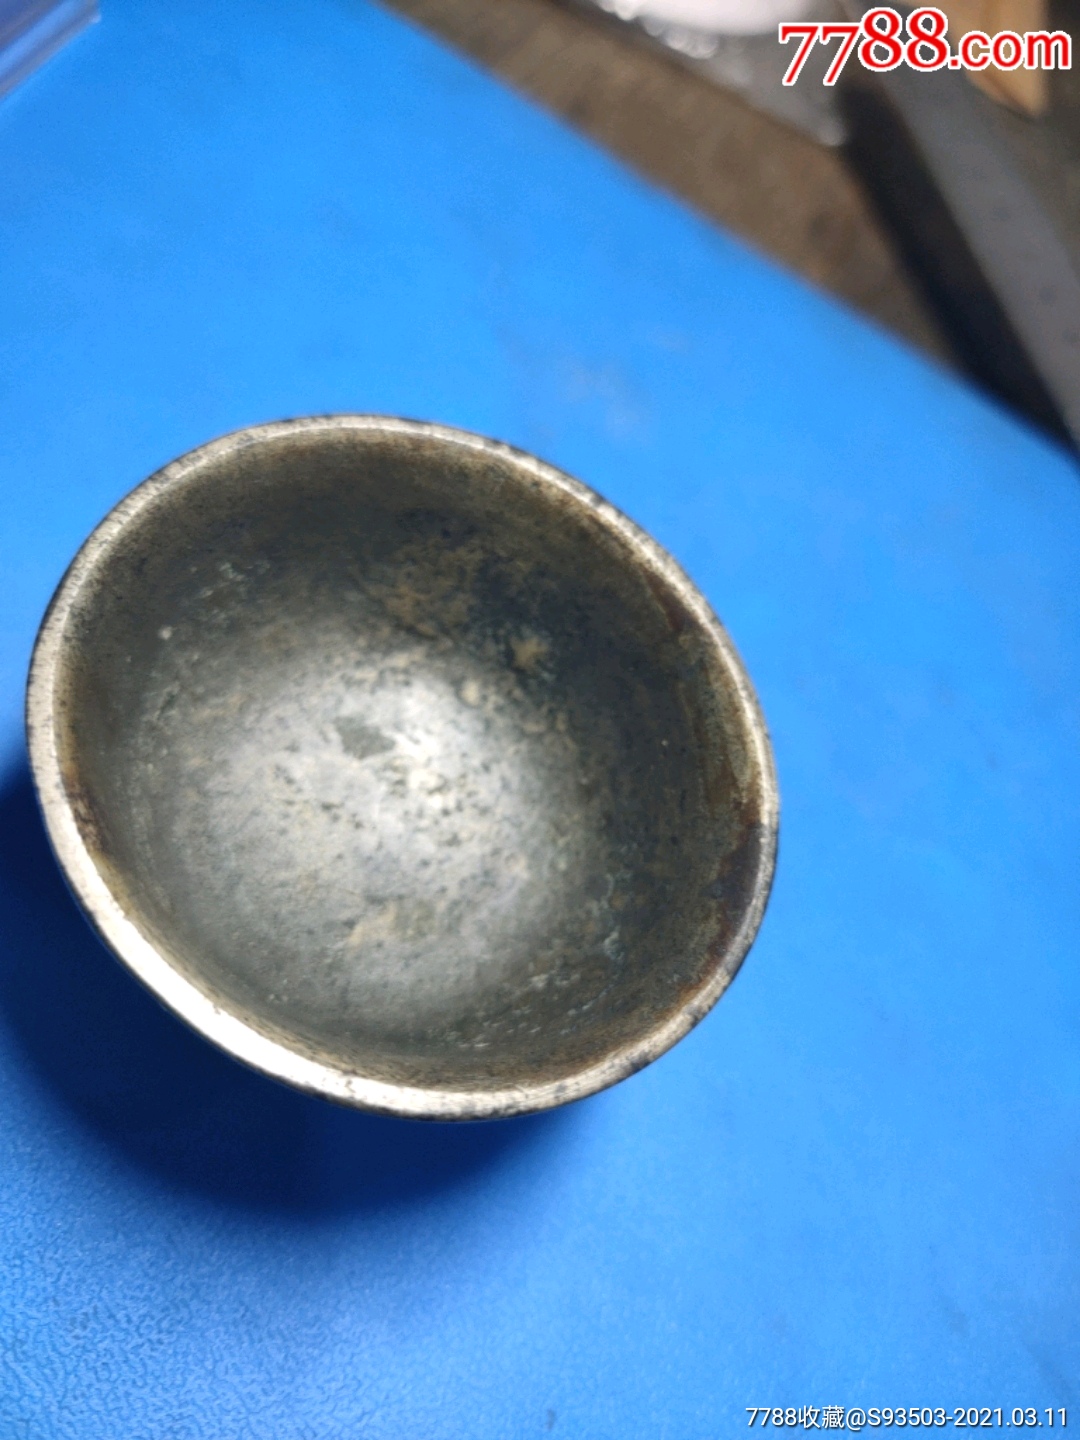 老铜酒杯,厚重-价格:78.0000元-se78826314-铜杂件